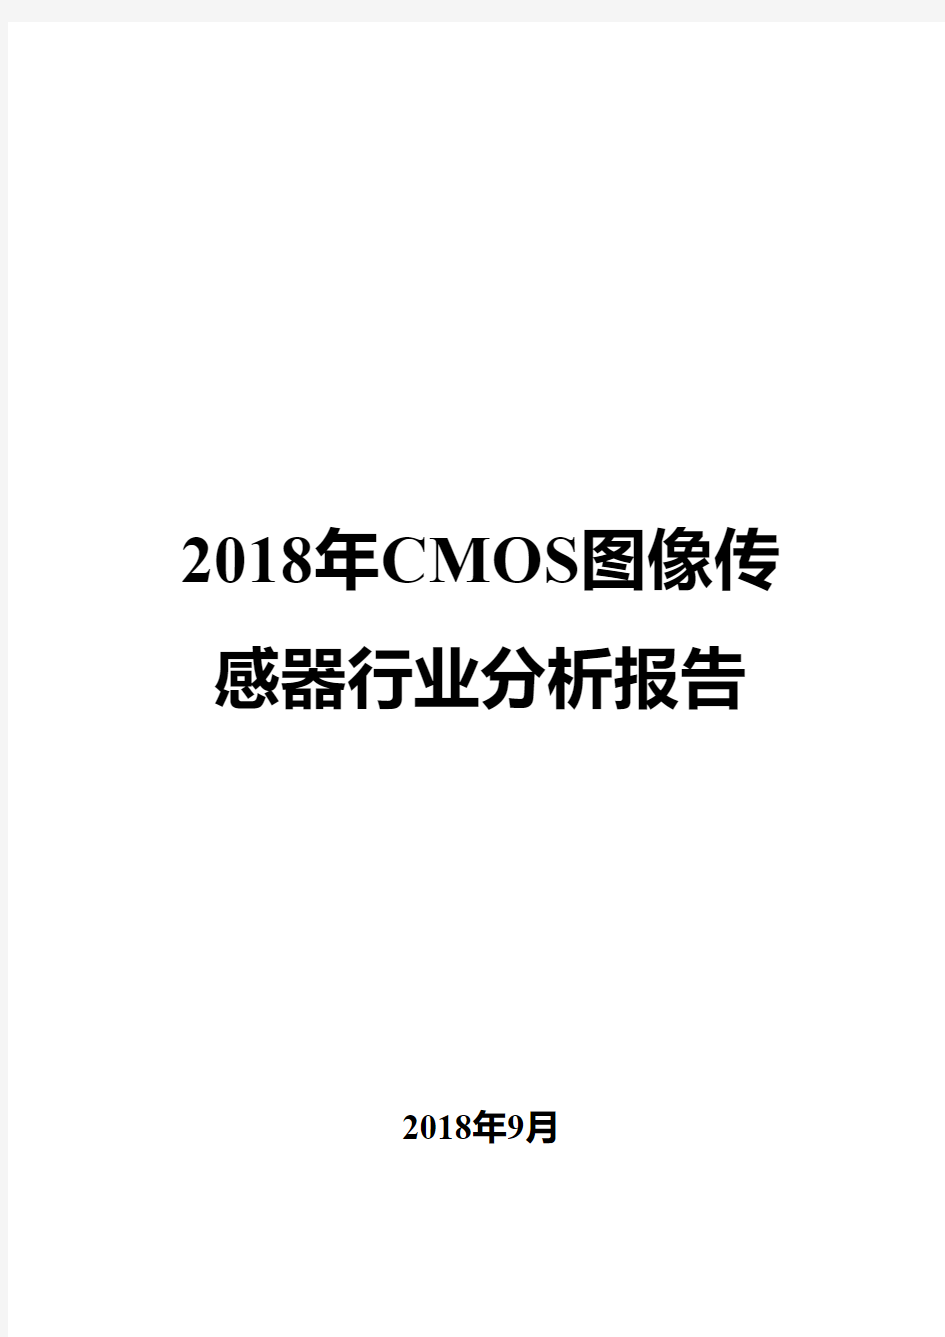 2018年CMOS图像传感器行业分析报告